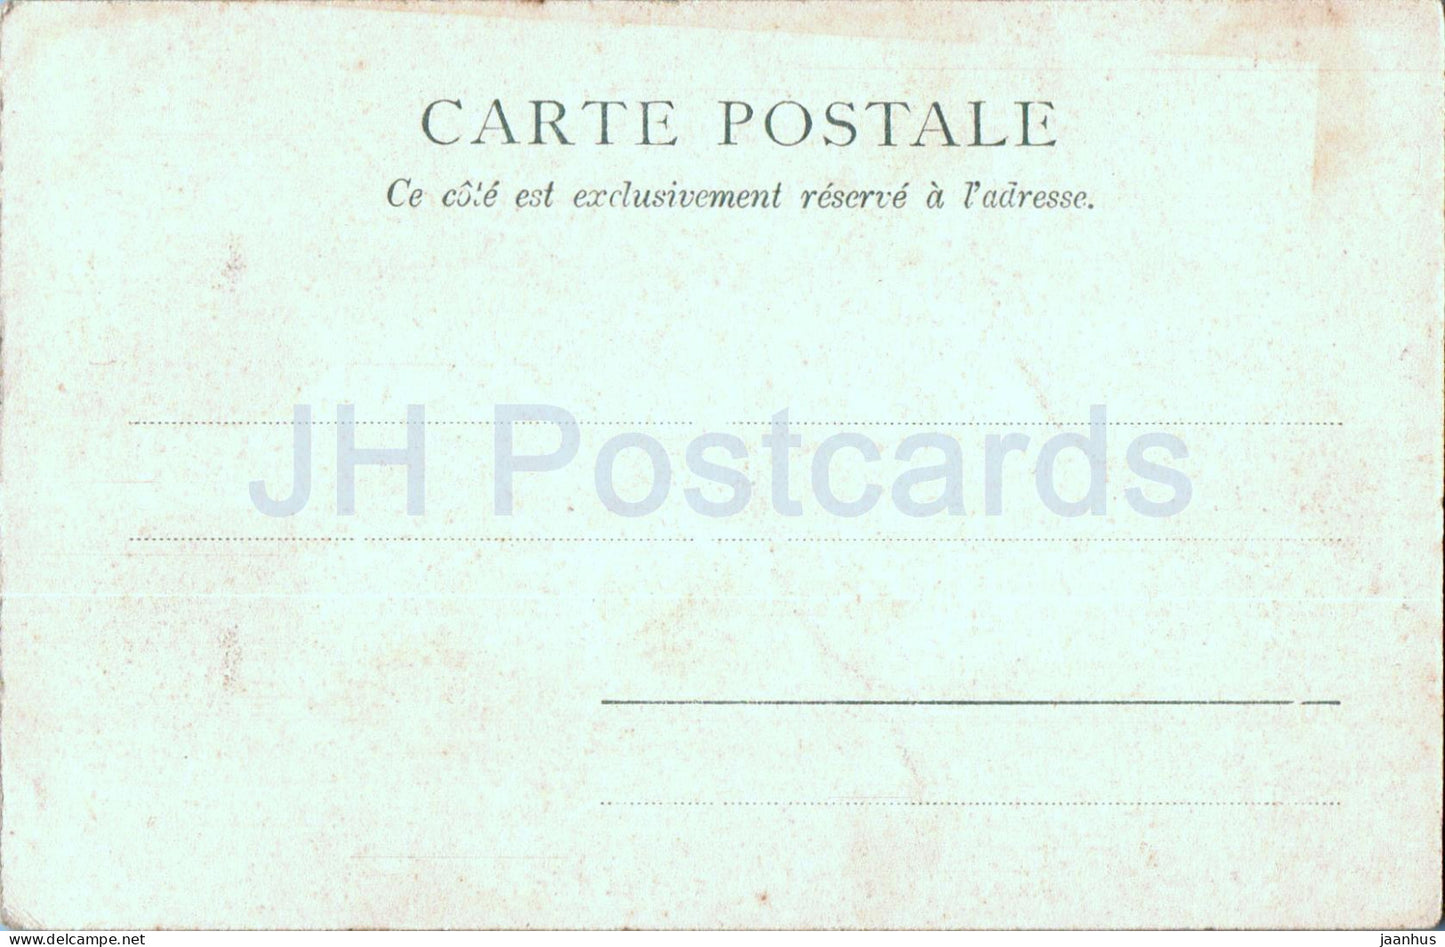 Caen - Place St Pierre Hotel de Valois ou d'Ecaville - old postcard - France - unused